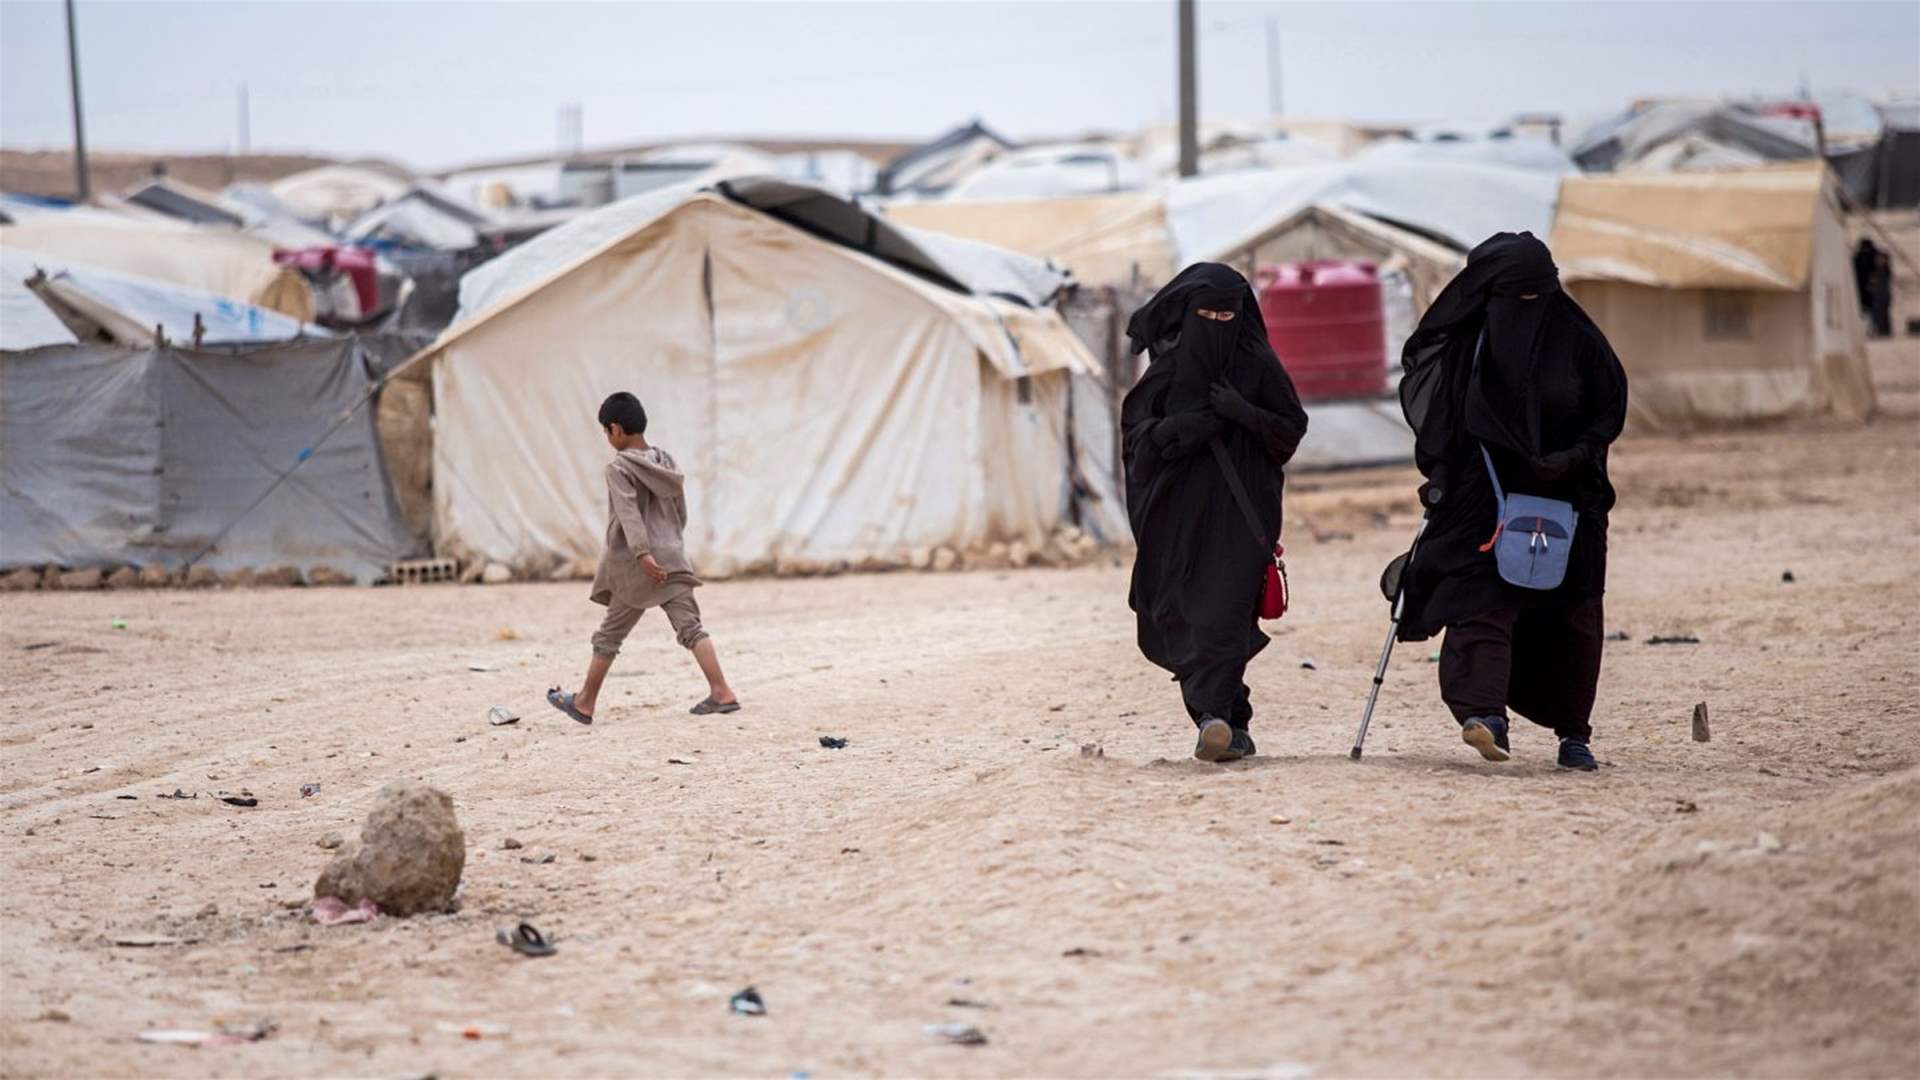 فرنسا أعادت الثلاثاء 15 امرأة و32 طفلا من مخيمات يحتجز فيها جهاديون في سوريا 